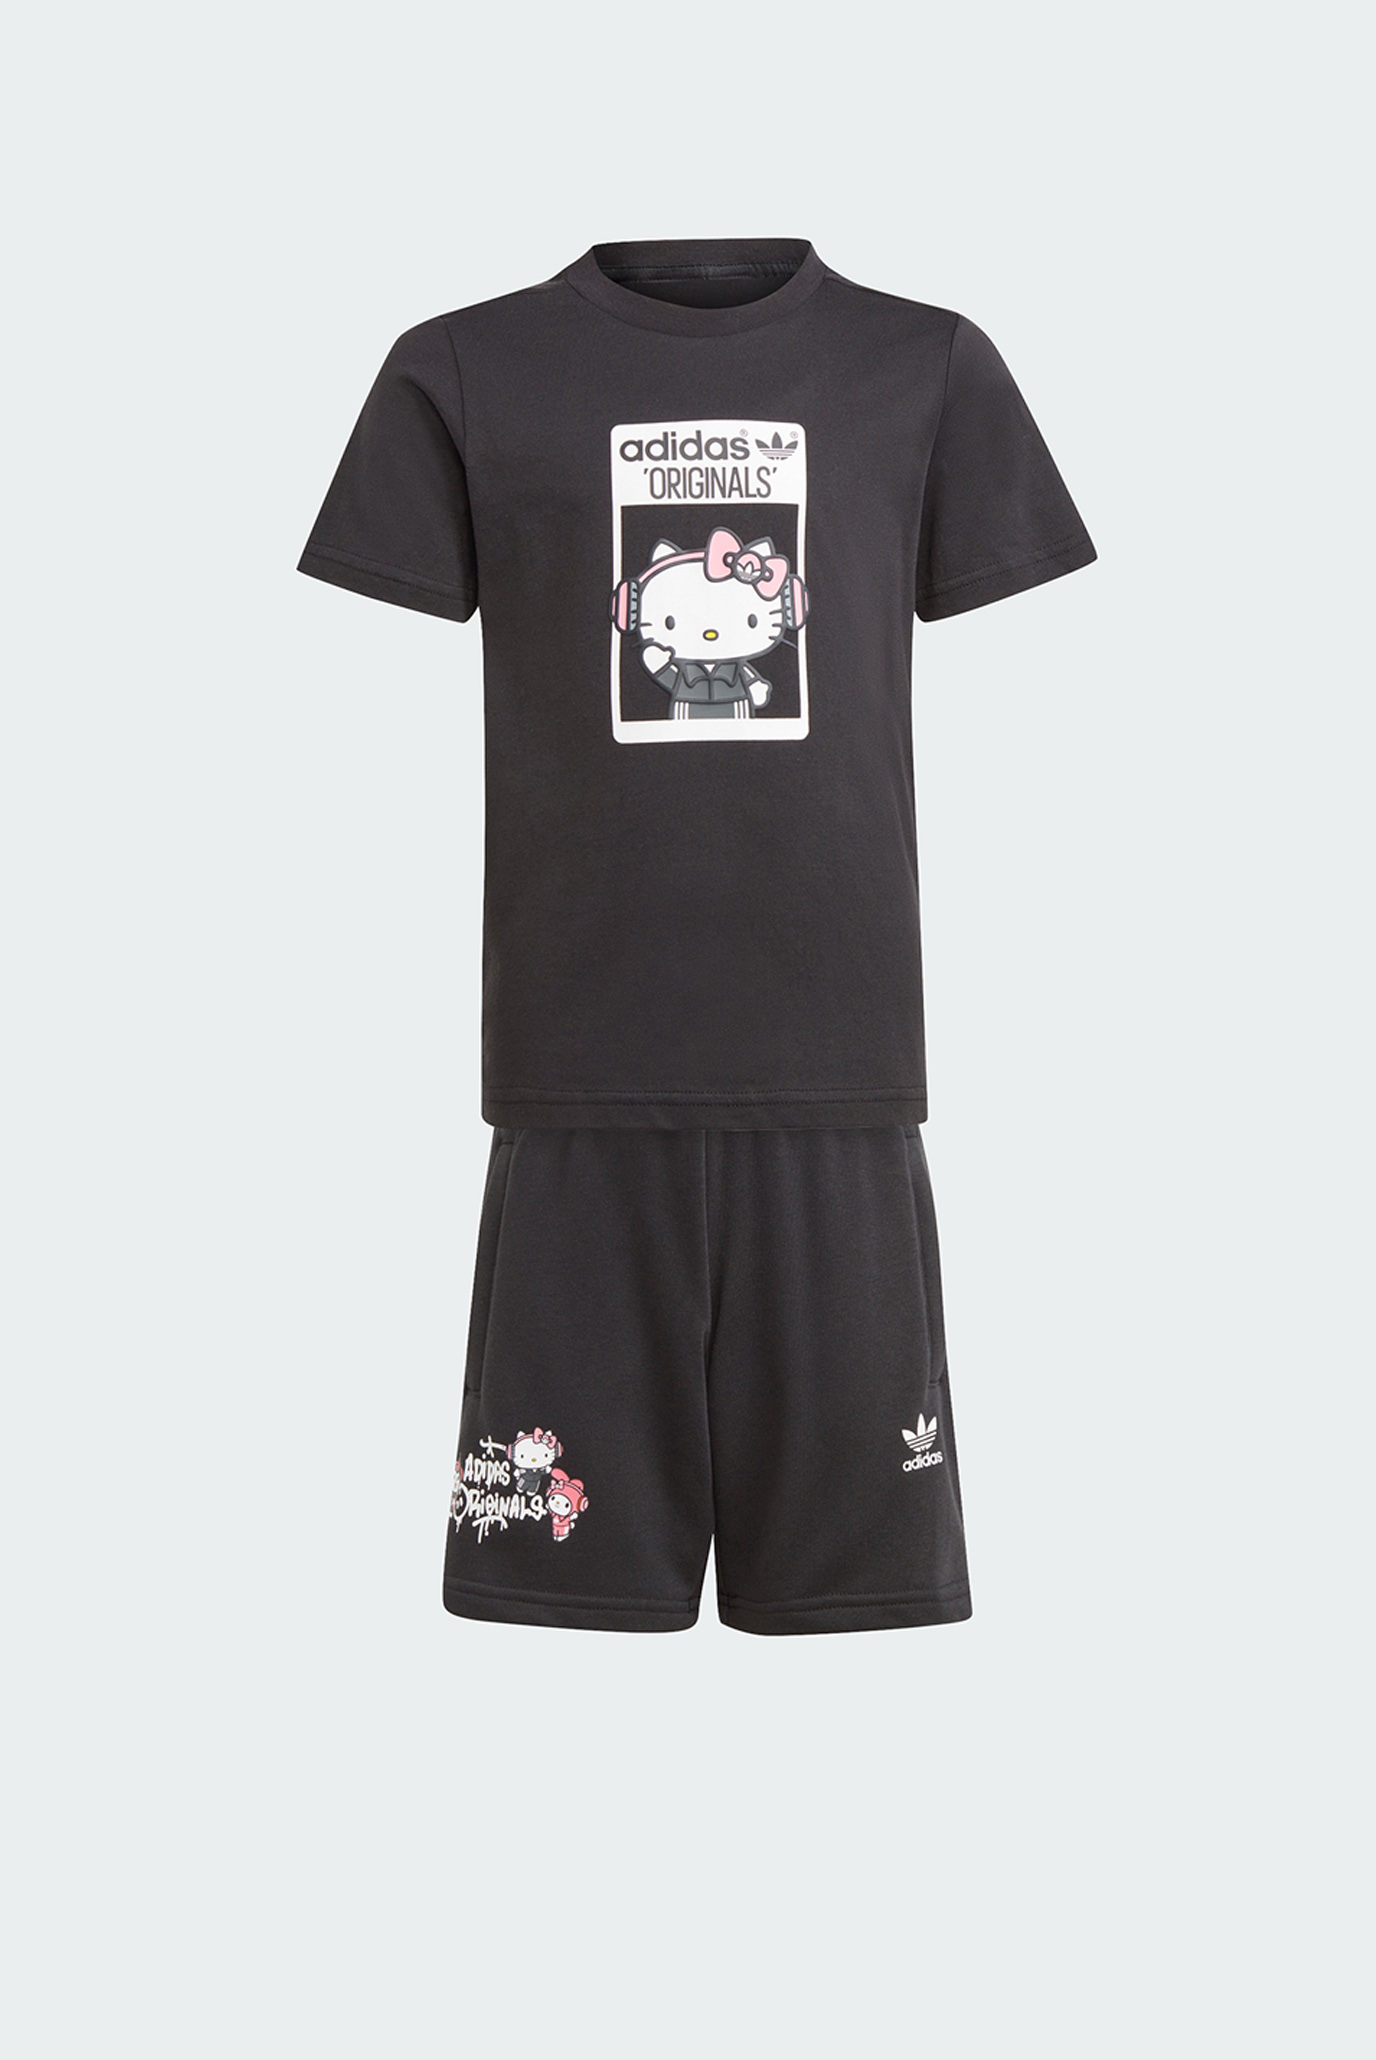 Дитячий чорний комплект одягу (футболка, шорти) adidas Originals x Hello Kitty 1